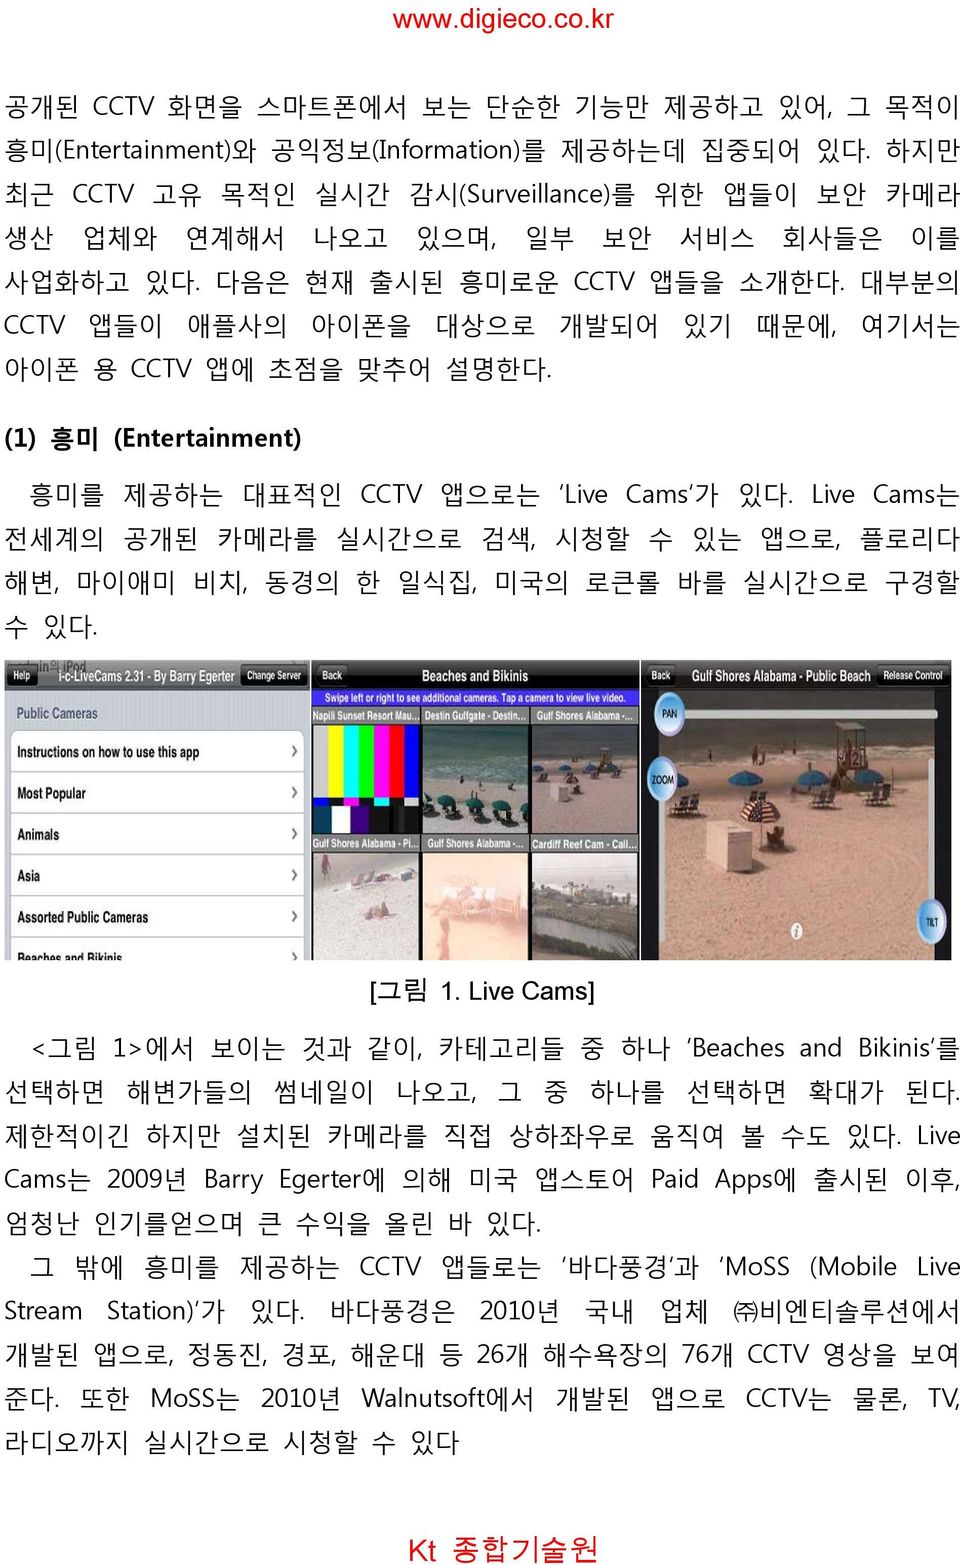 대부분의 CCTV 앱들이 애플사의 아이폰을 대상으로 개발되어 있기 때문에, 여기서는 아이폰 용 CCTV 앱에 초점을 맞추어 설명한다. (1) 흥미 (Entertainment) 흥미를 제공하는 대표적인 CCTV 앱으로는 Live Cams 가 있다.